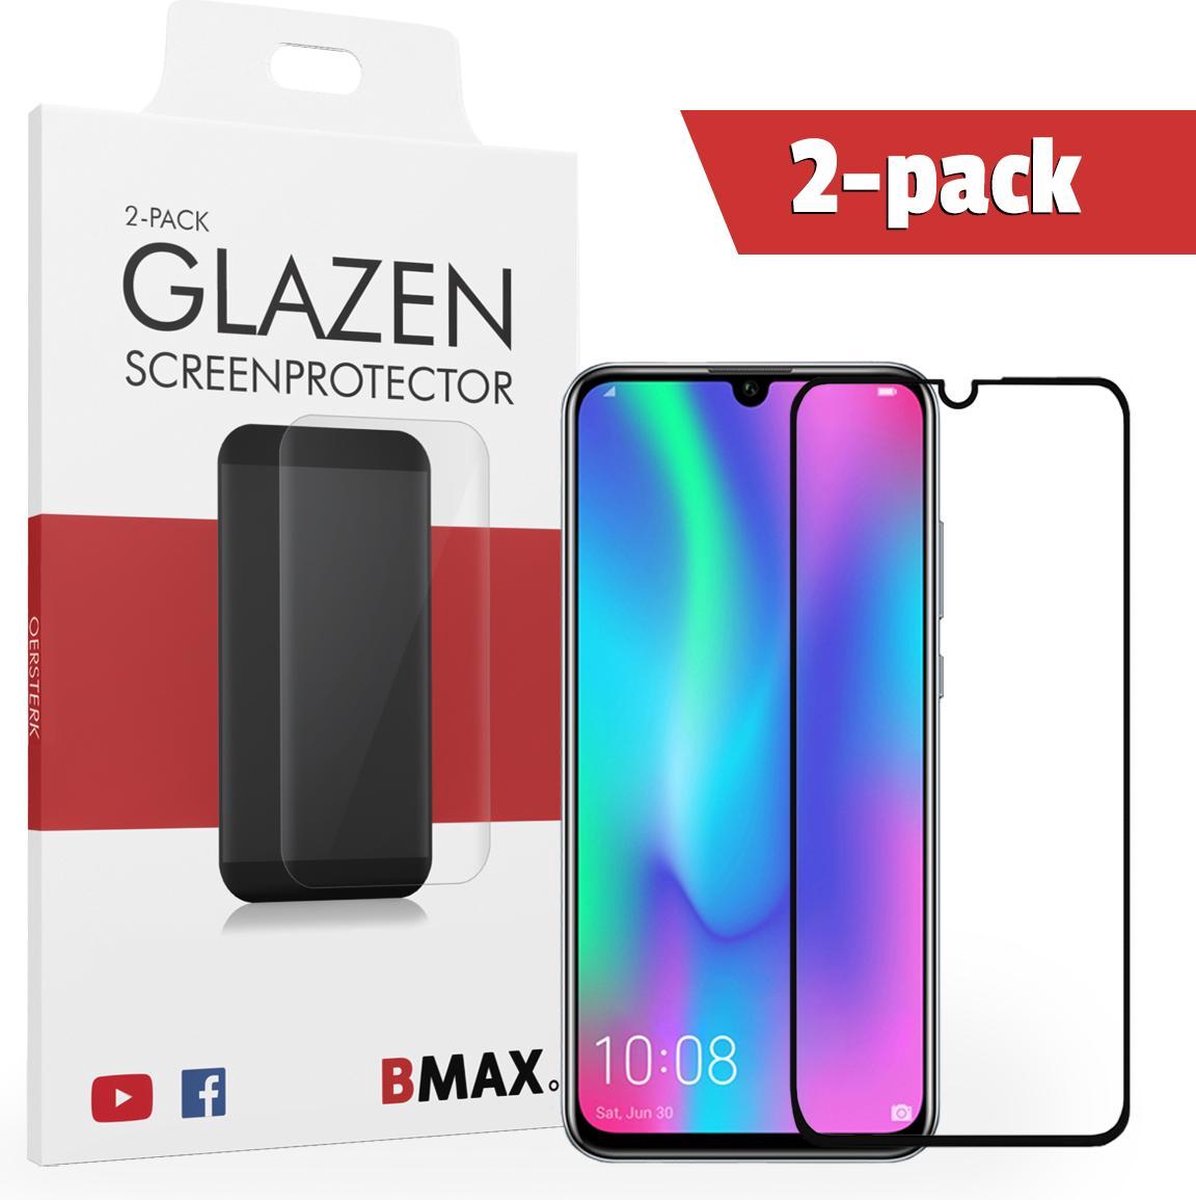 2-pack Bmax Honor 10 Lite Screenprotector - Glass - Full Cover 2.5d - Black